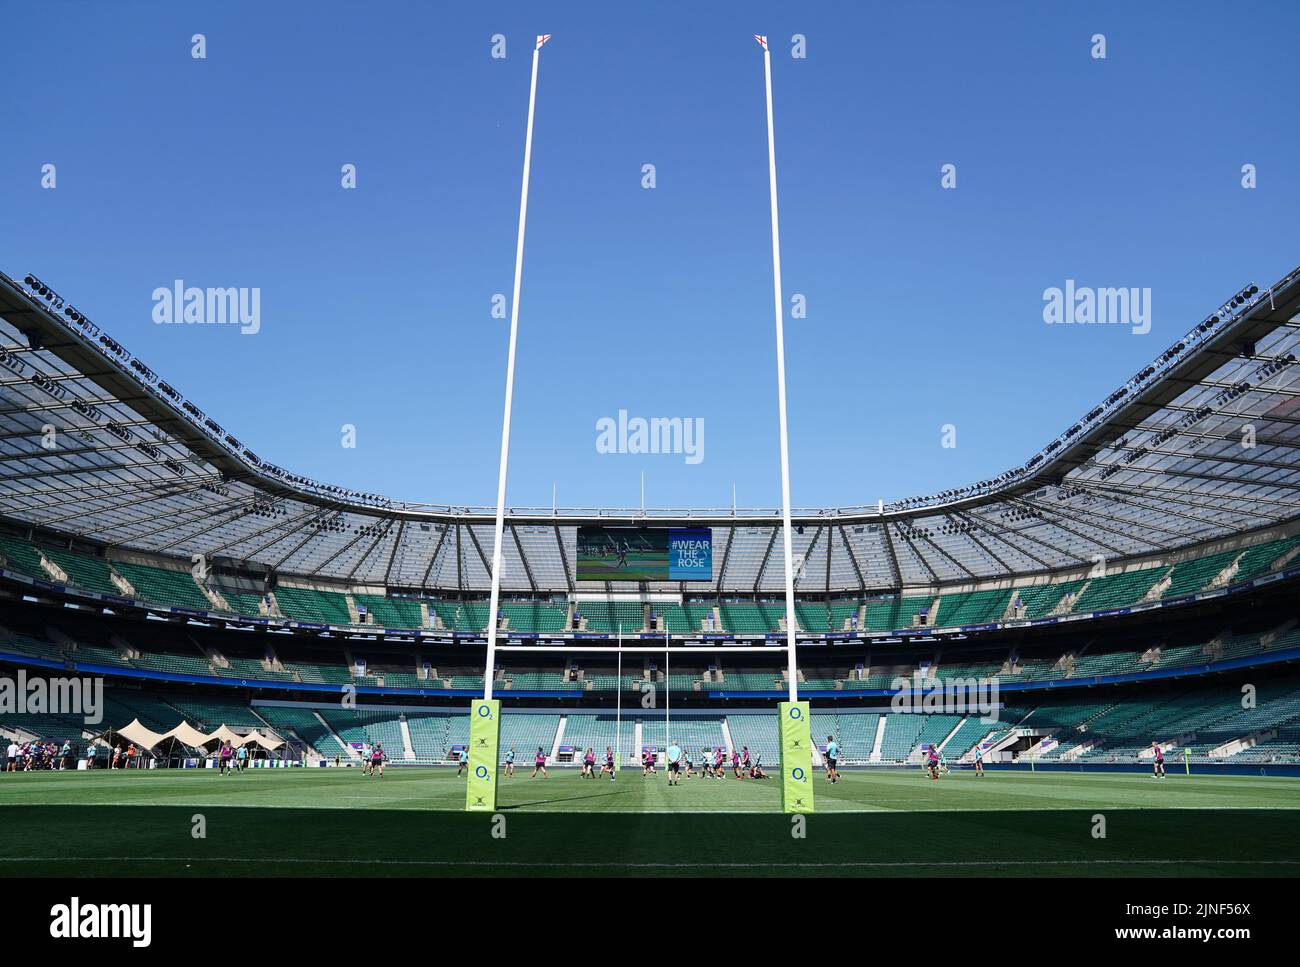 Una vista del campo desde detrás de un gol durante una sesión de entrenamiento abierta en el estadio Twickenham de Londres. Fecha de la foto: Jueves 11 de agosto de 2022. Foto de stock